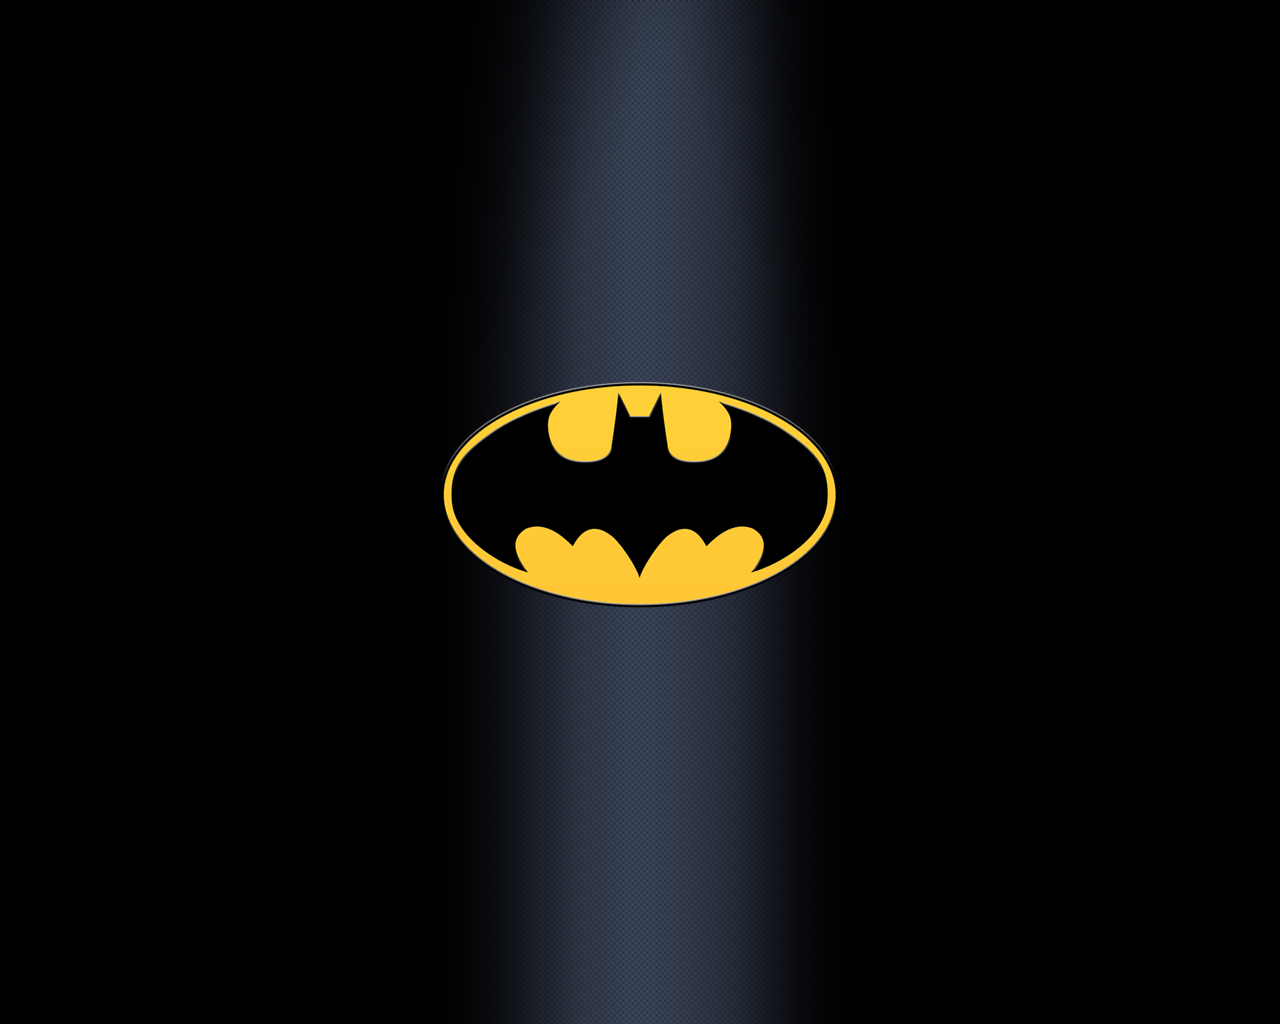 Логотип Бэтмена на черном фоне